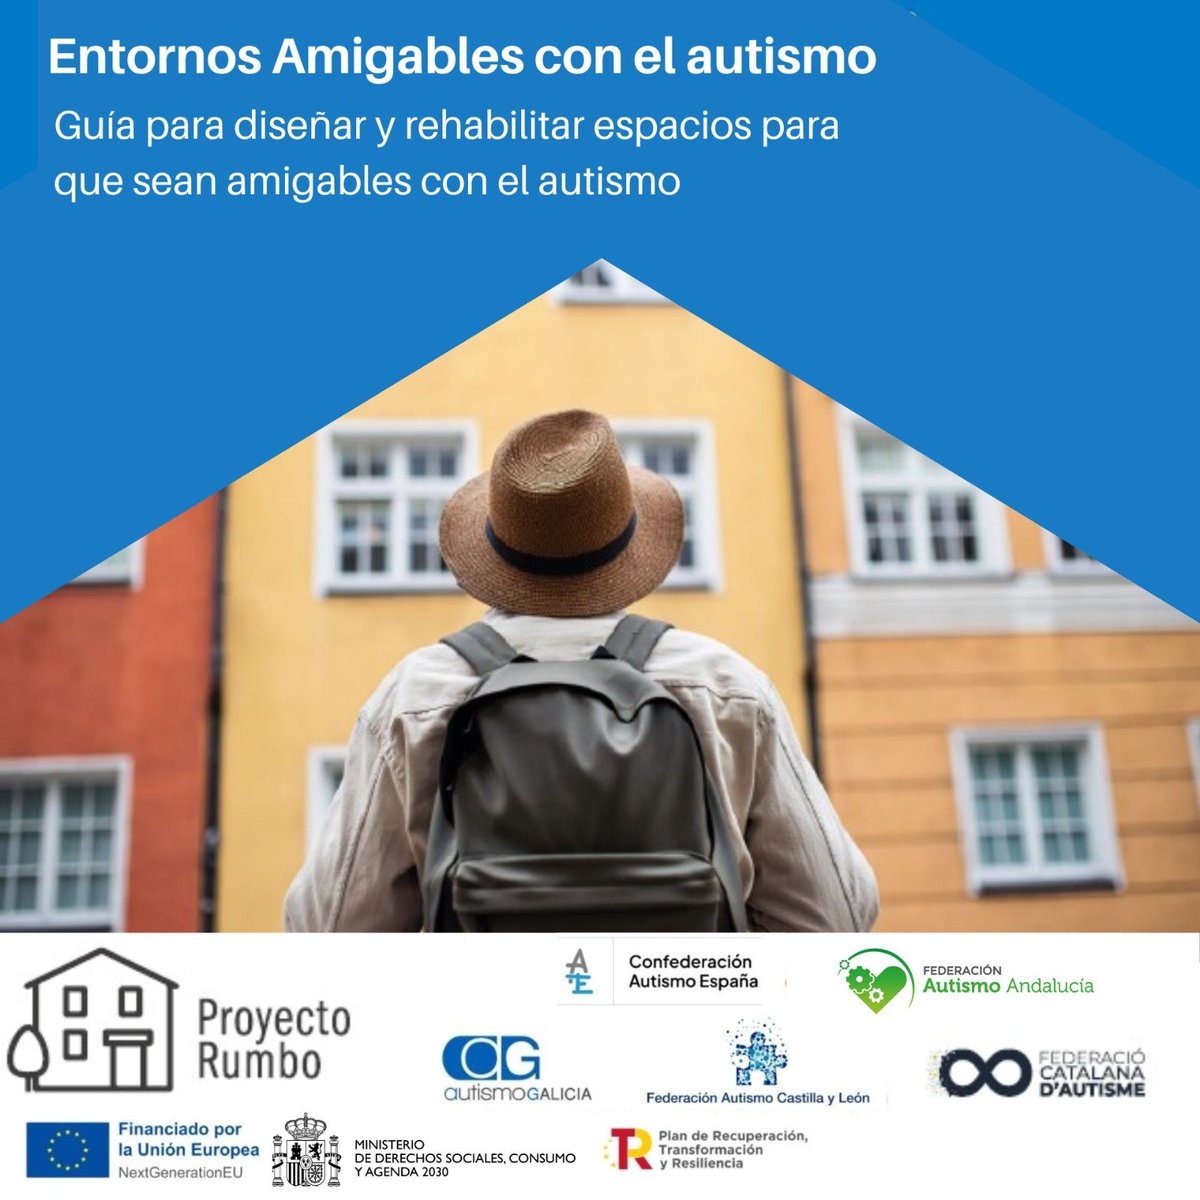 🏡 #ProyectoRumbo 📙 Publicamos junto a @FedCatAutisme @Autismoandaluci @AutismoGalicia @AutismoCyL una guía para adaptar espacios y viviendas con el #Autismo. El objetivo es mejorar la #CalidadDeVida de las personas autistas y sus familias. ▶️ autismo.org.es/rumbo-guia-ciu…